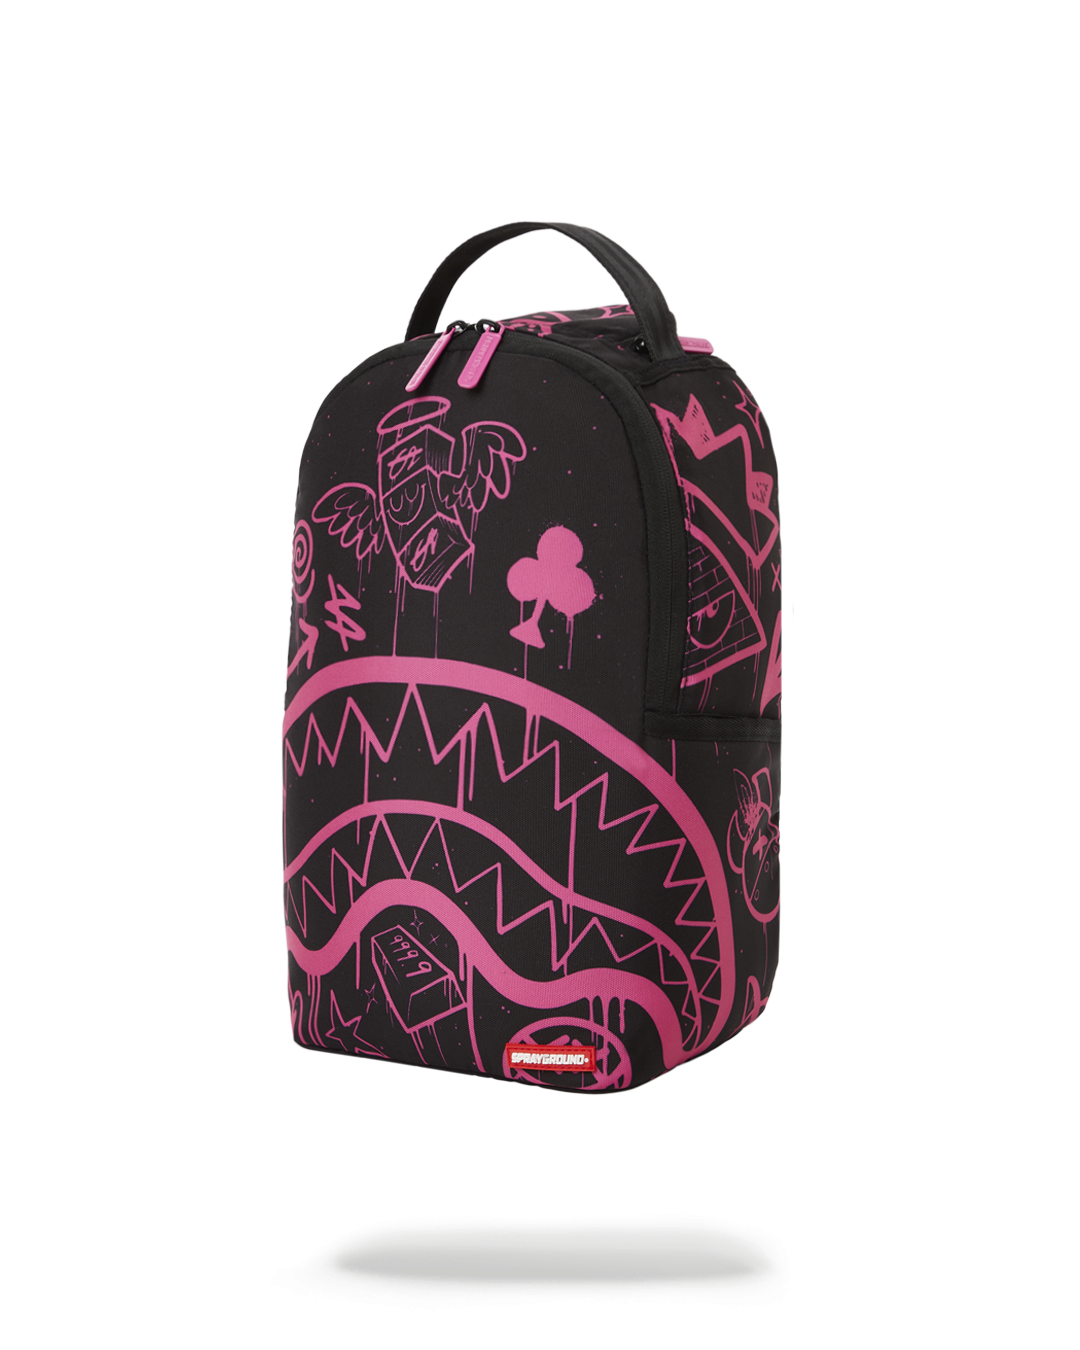  Sprayground Backpack For Girls